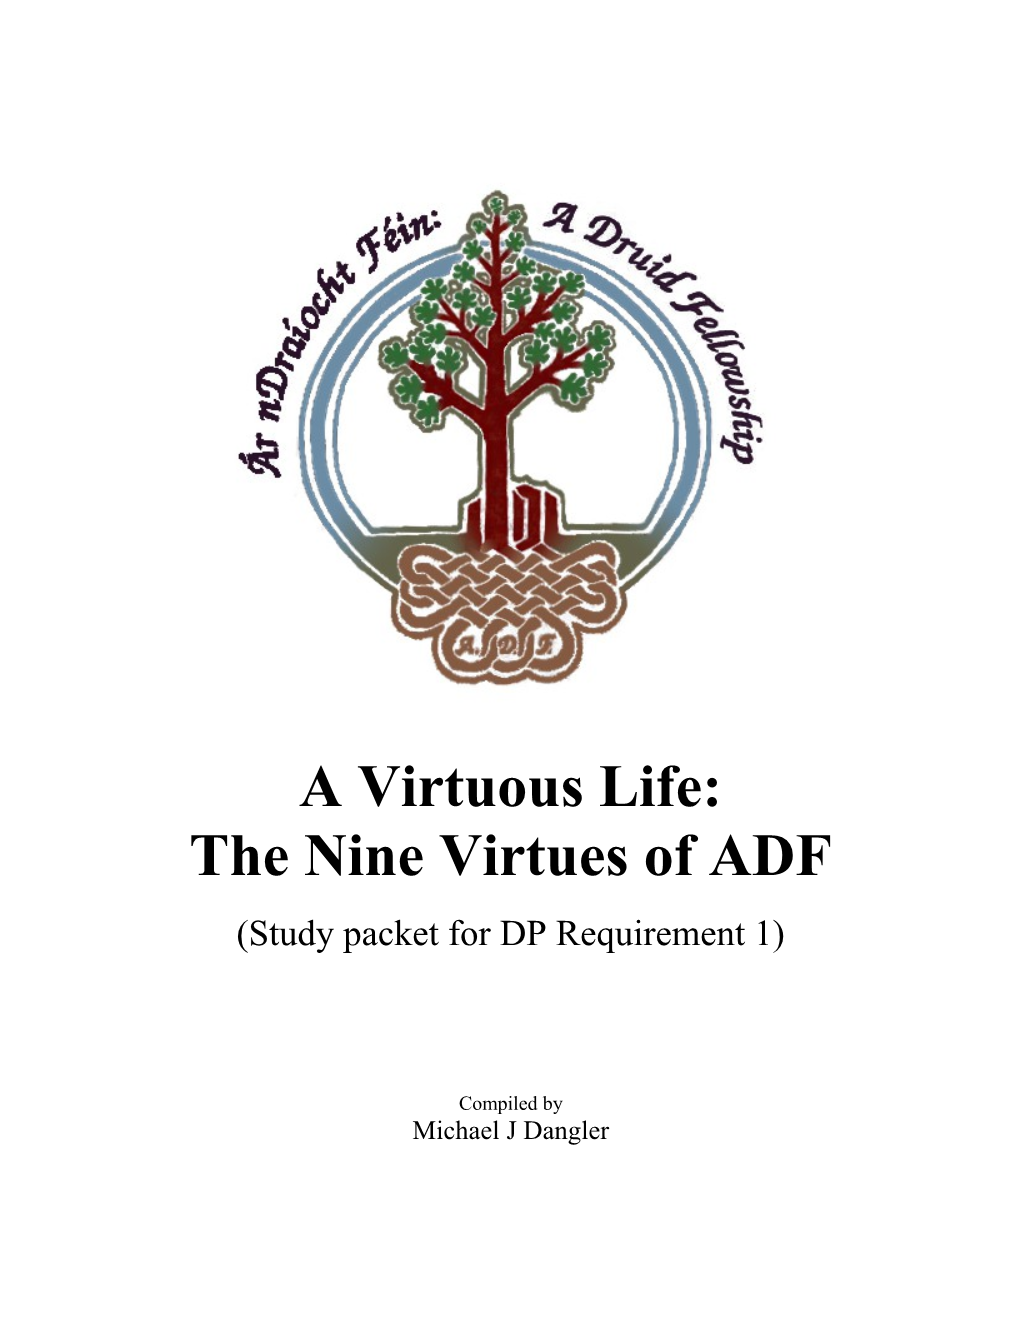 The Nine Virtues of ADF